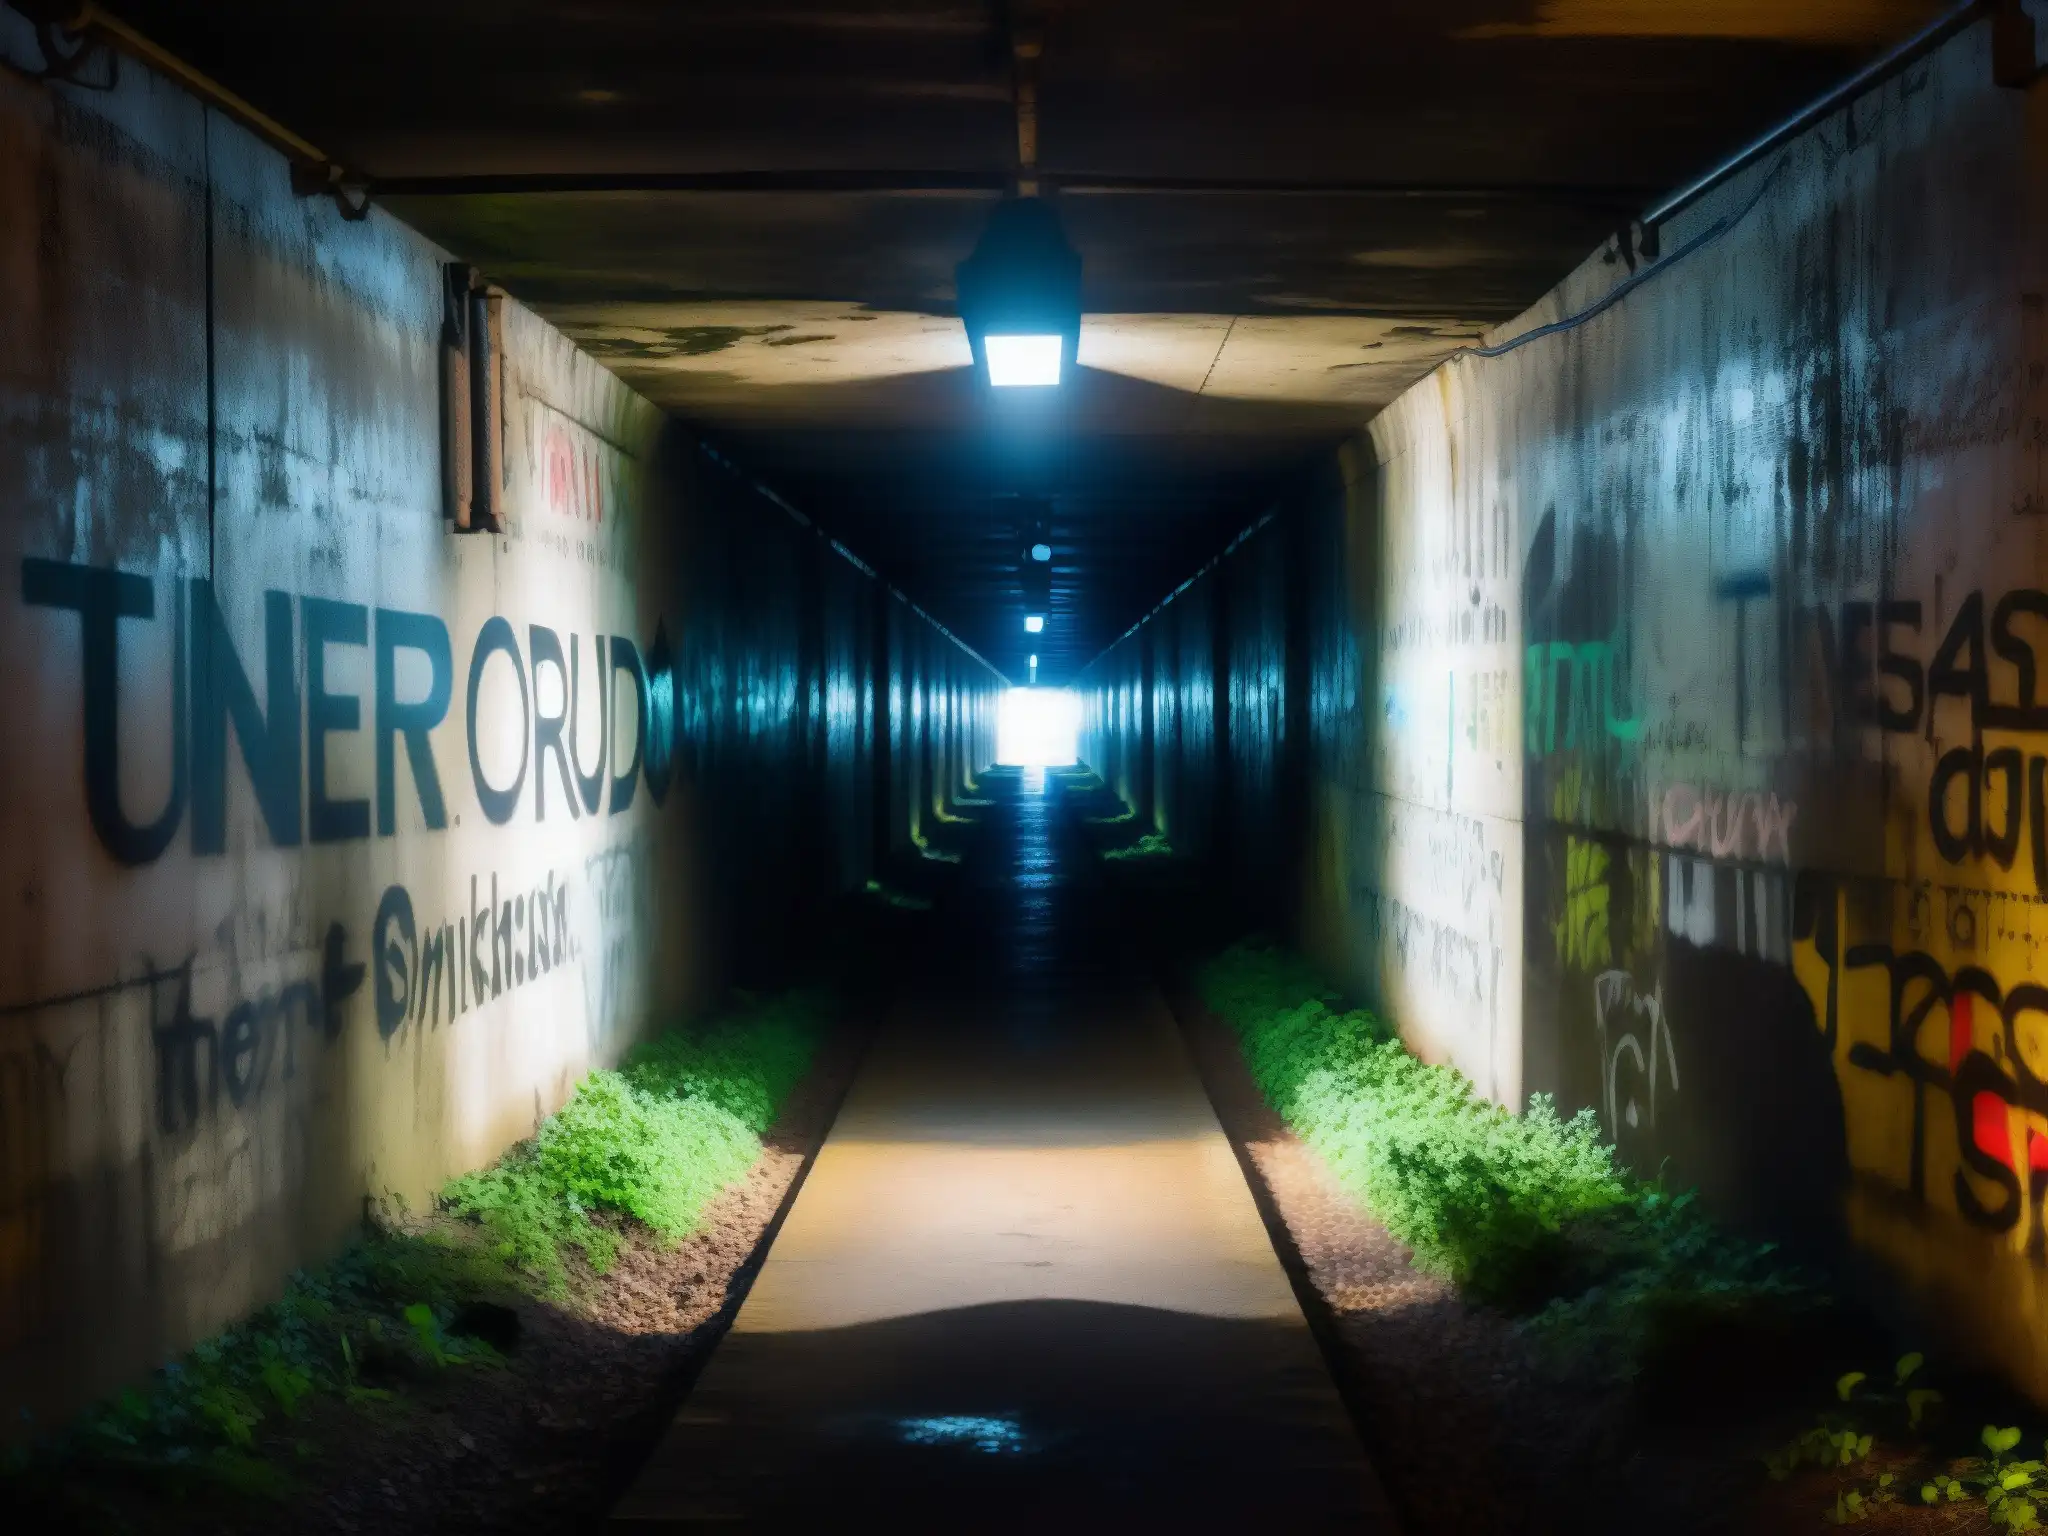 Un túnel abandonado y tenebroso con graffiti inquietante, símbolos misteriosos y una atmósfera de leyendas urbanas más aterradoras